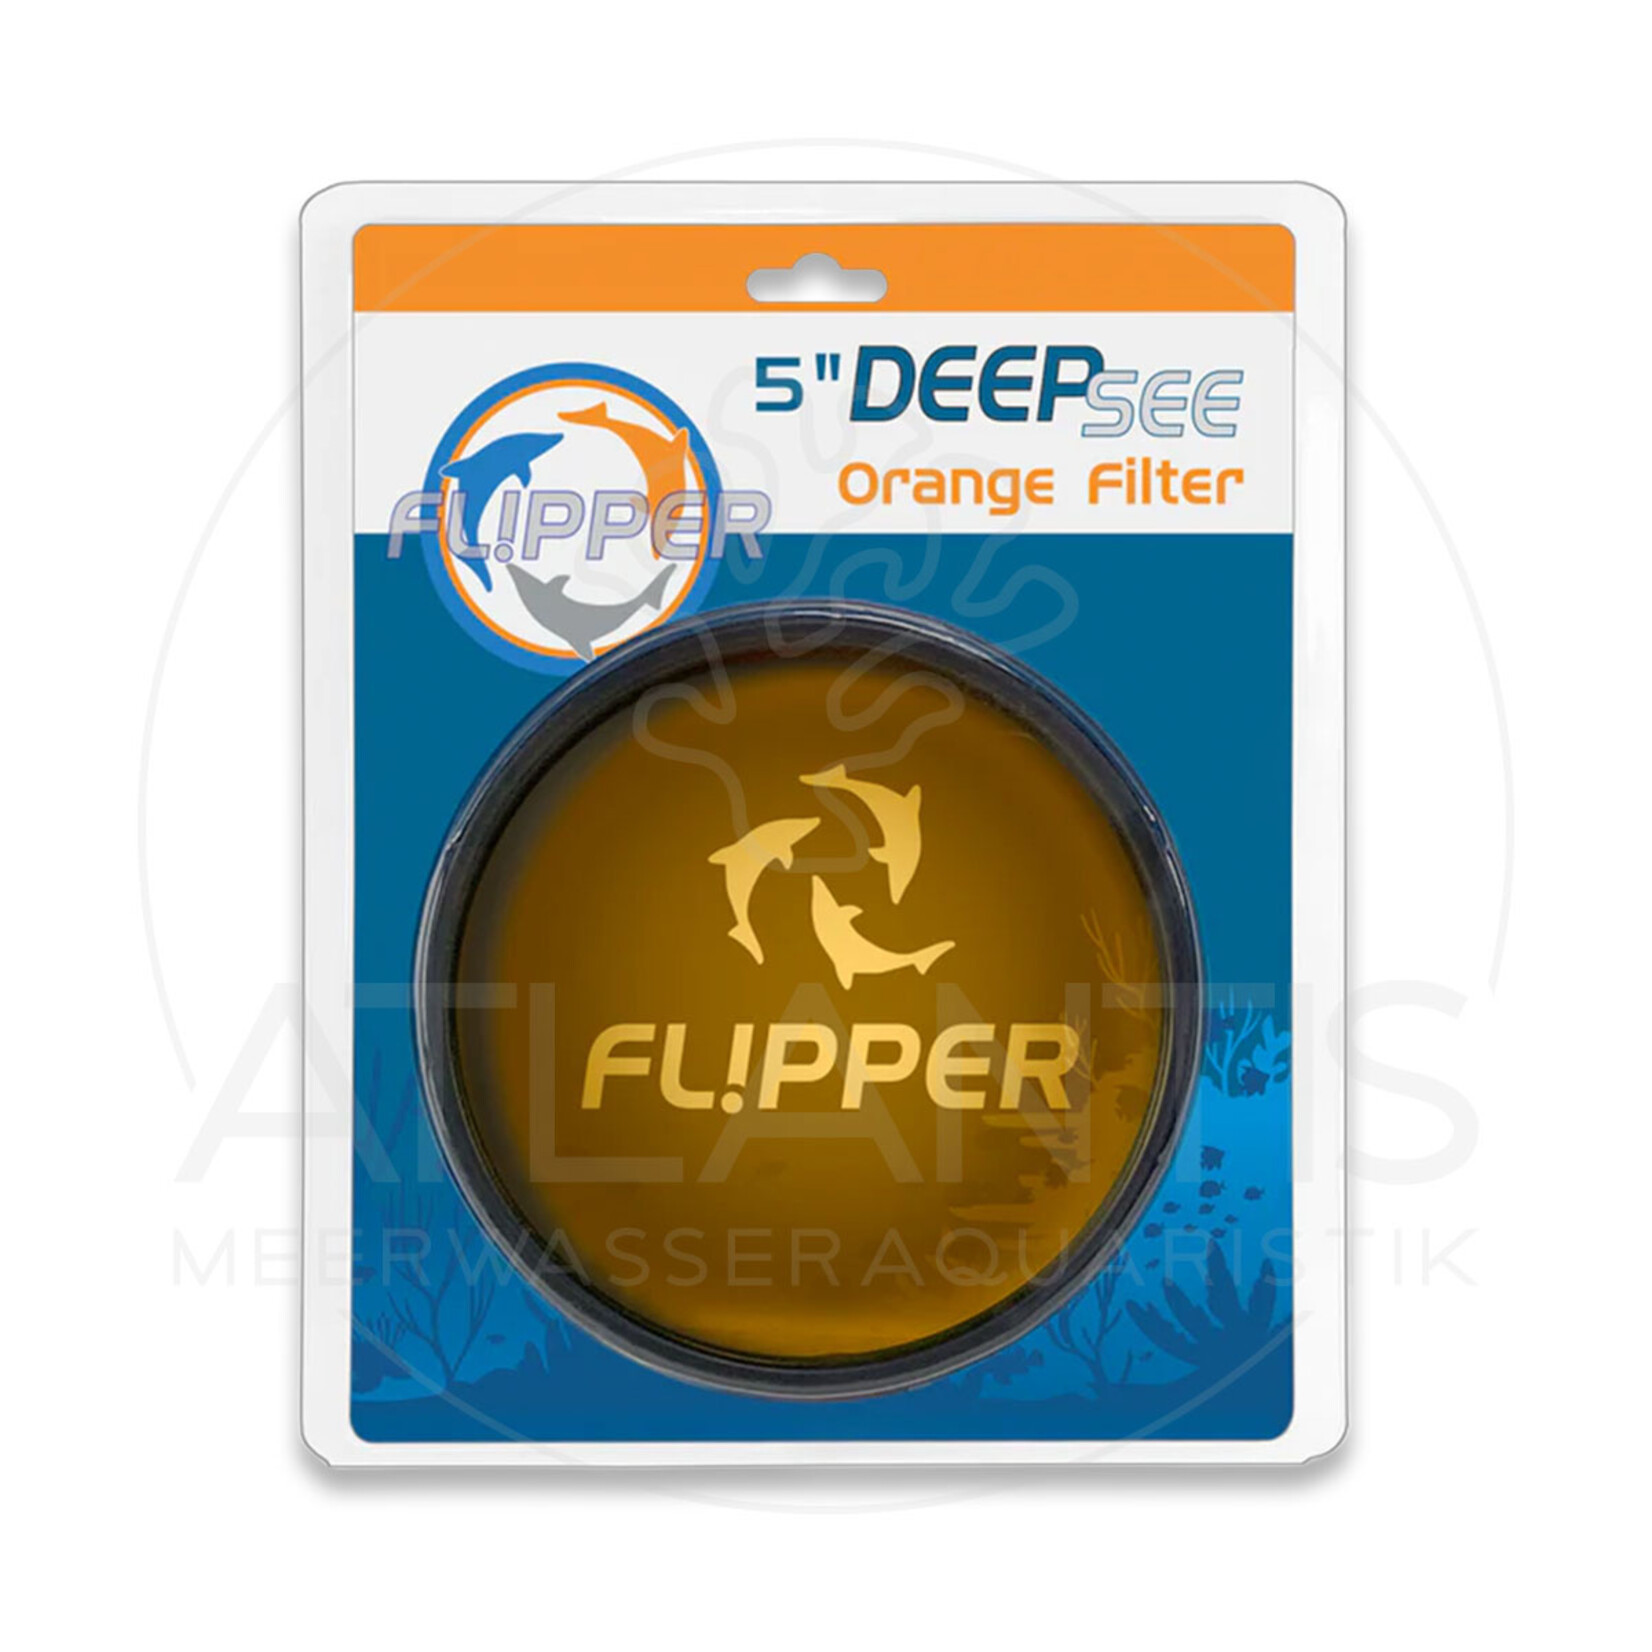 Flipper DeepSee Max 5" - Orangener Filter